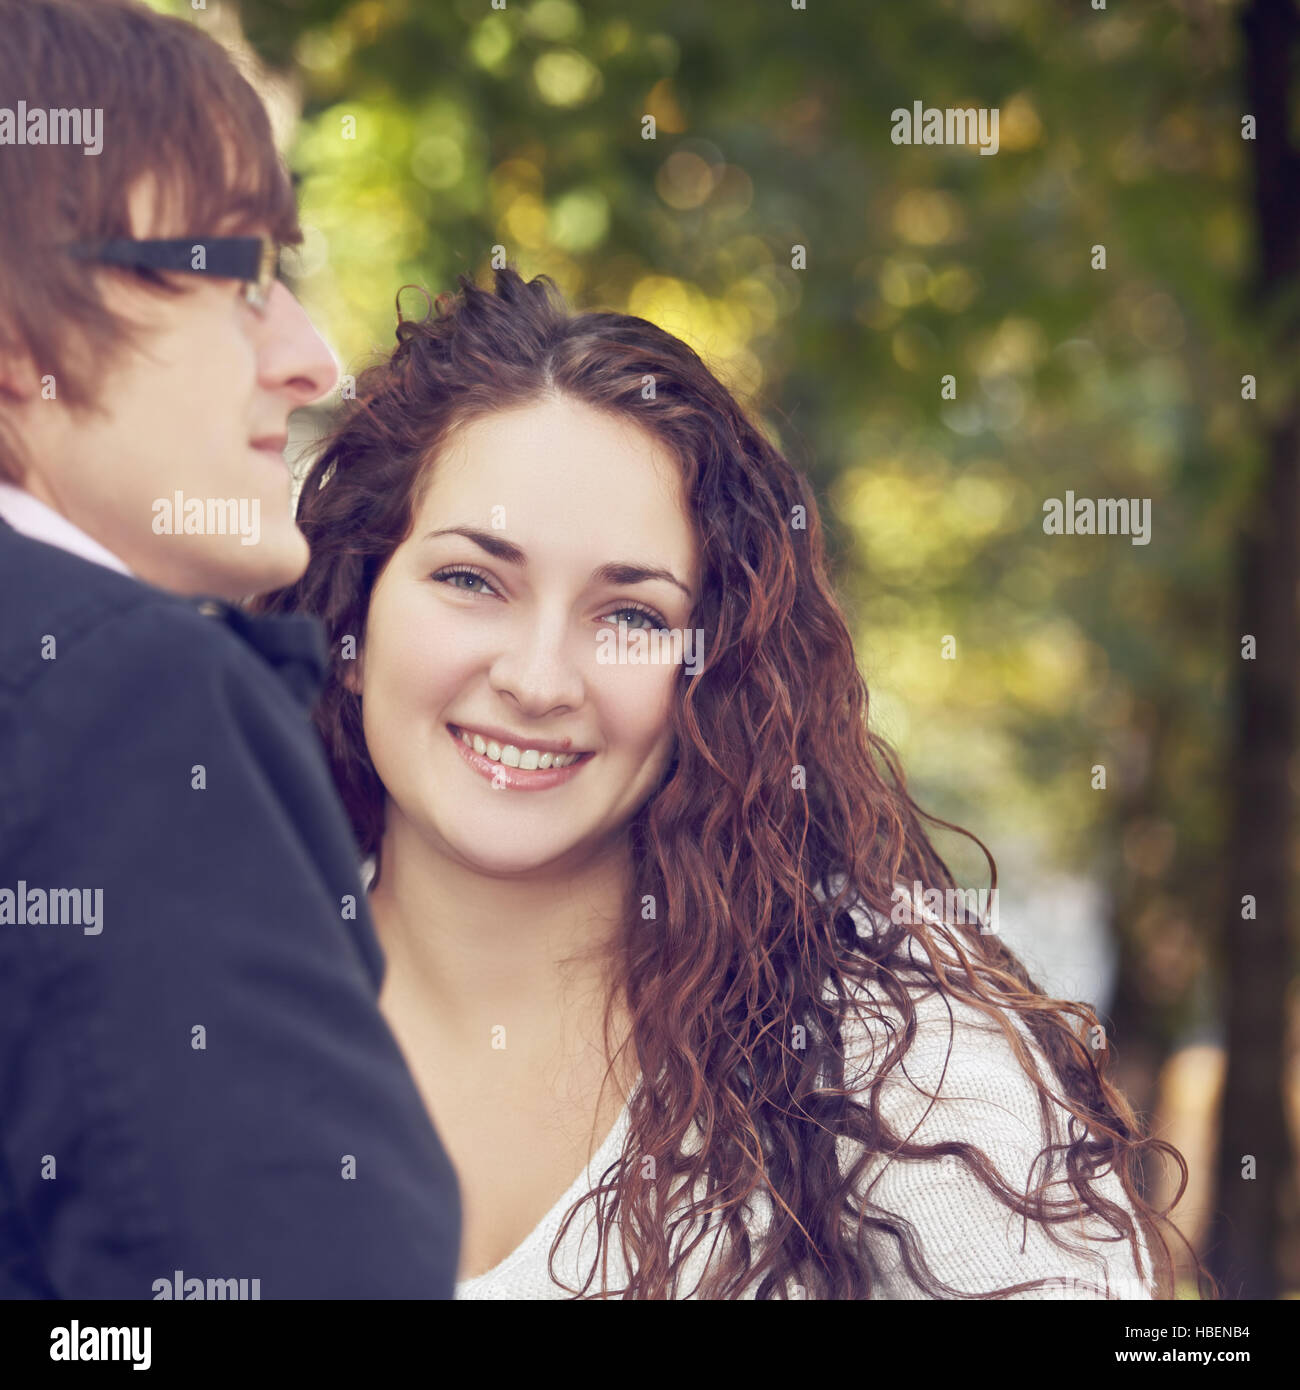 Happy woman with boyfriend Stock Photo